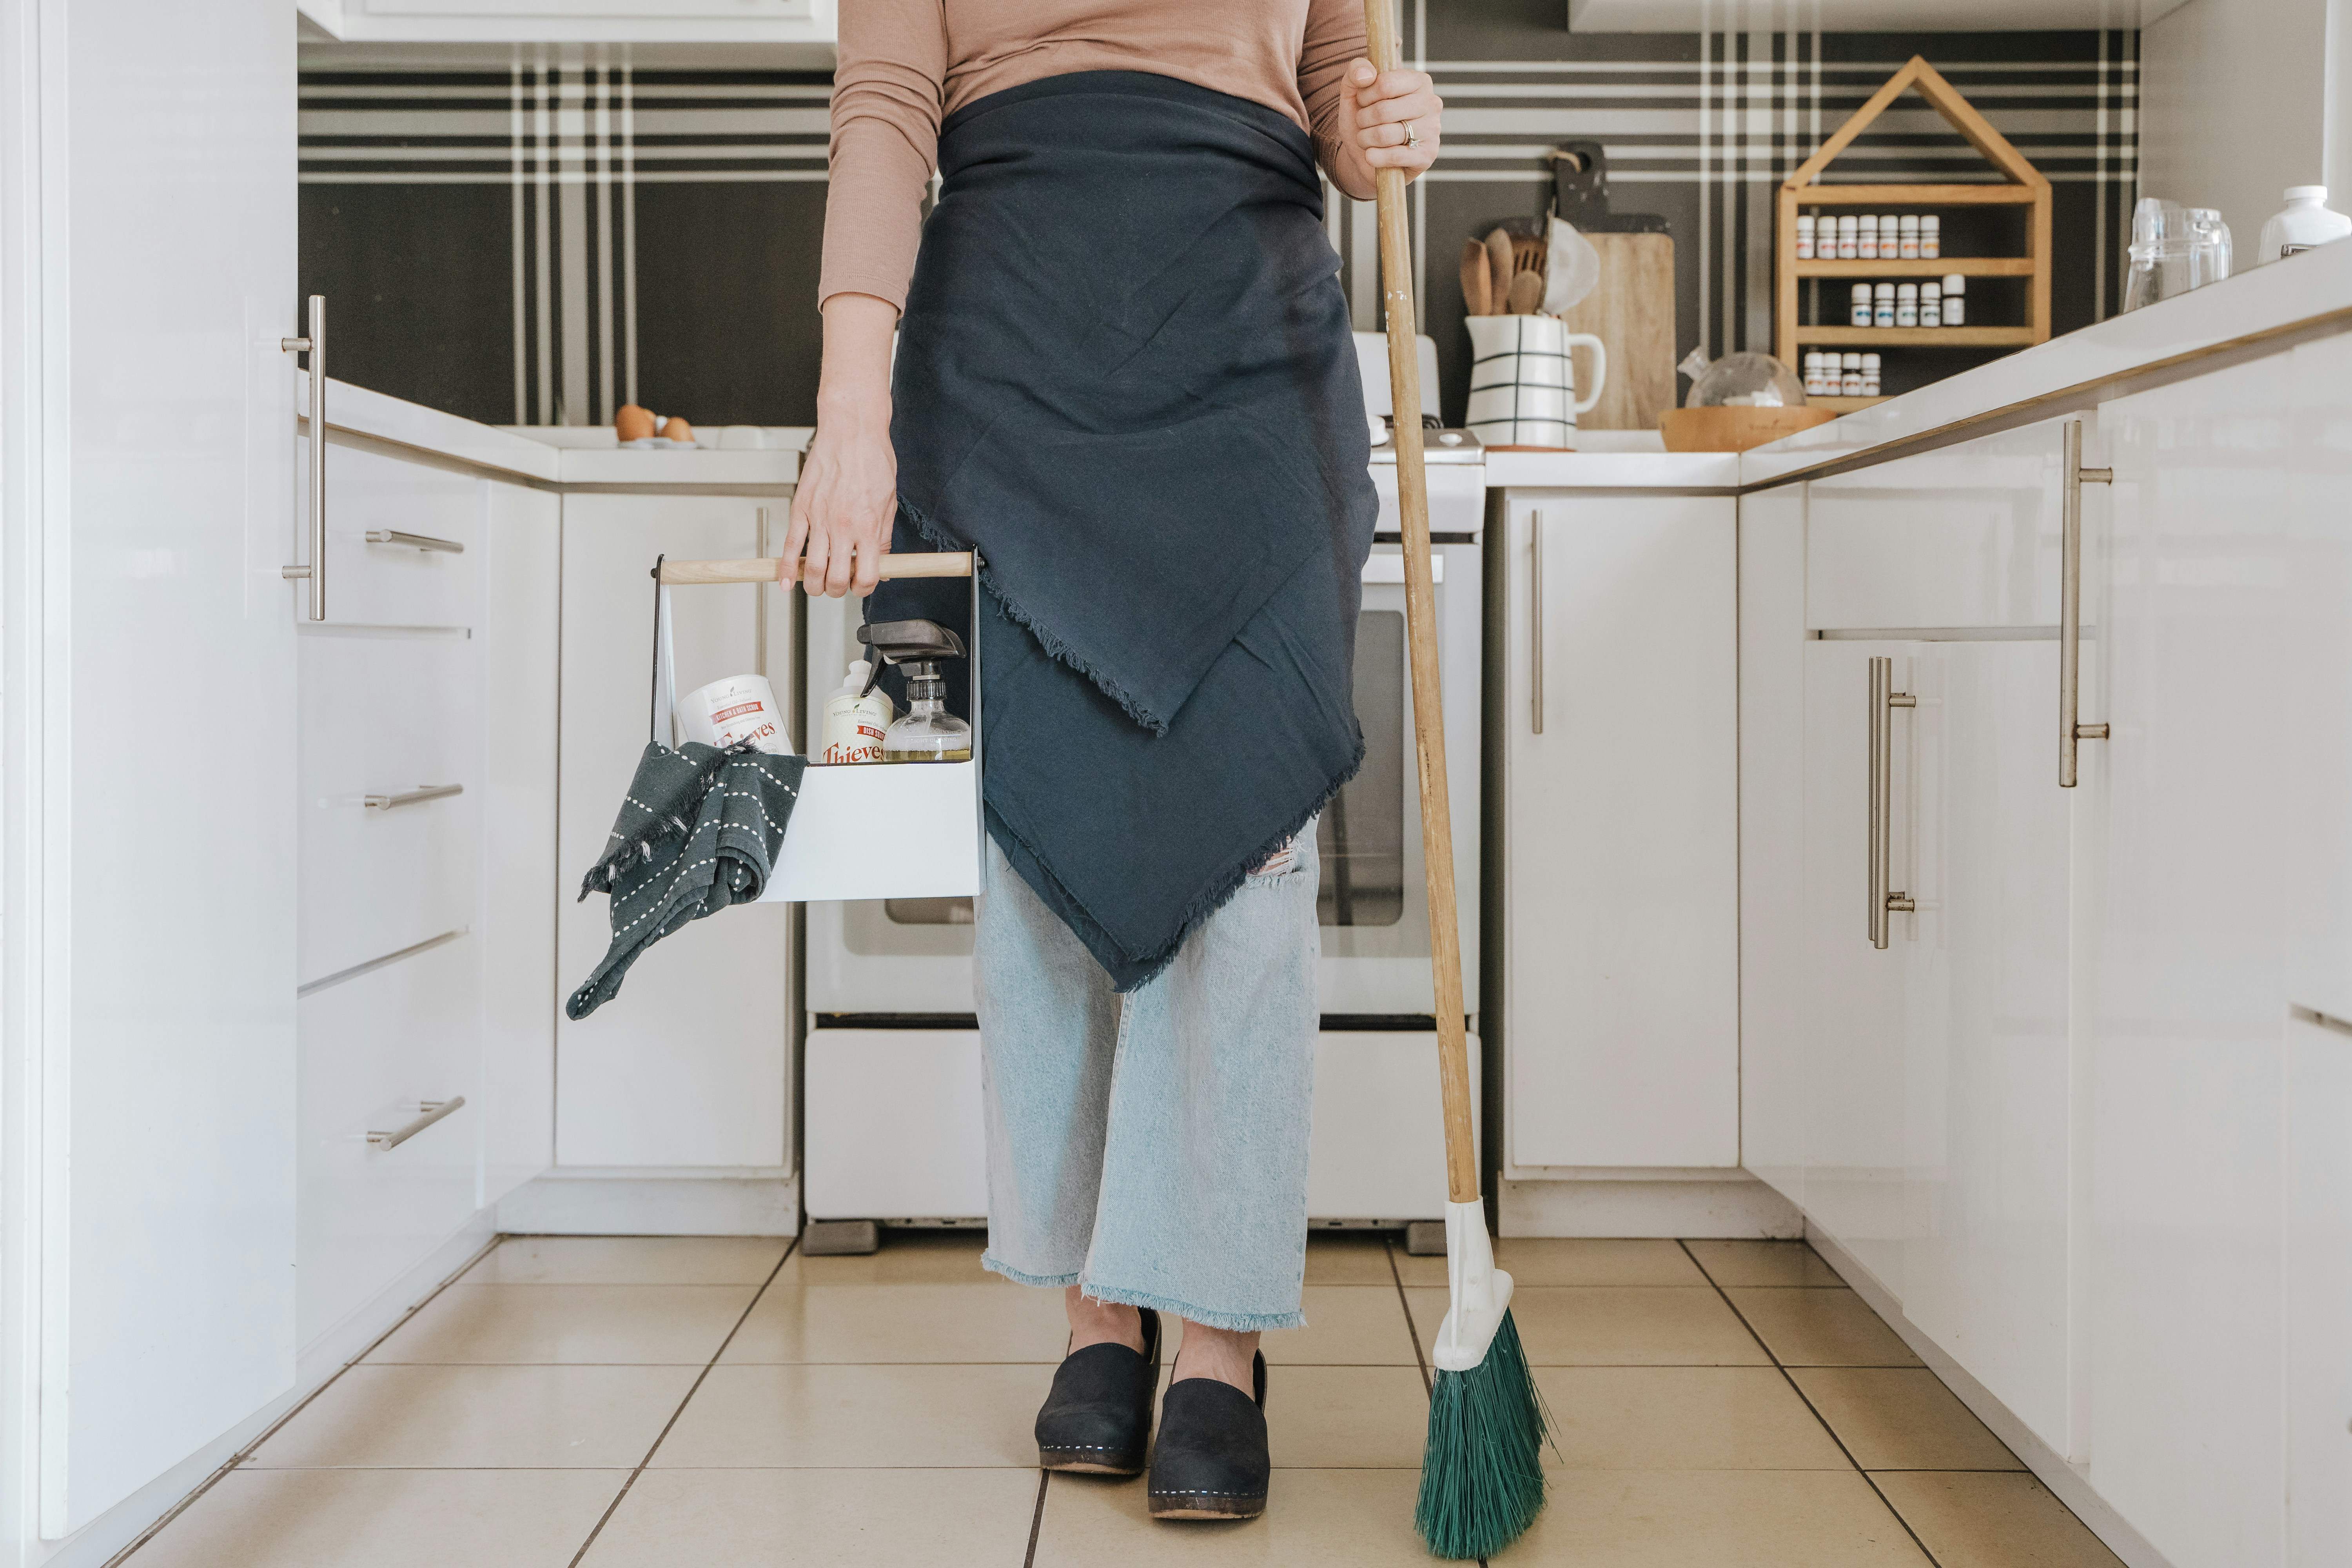 limpieza casa trabajadora del hogar / josue michel / unsplash